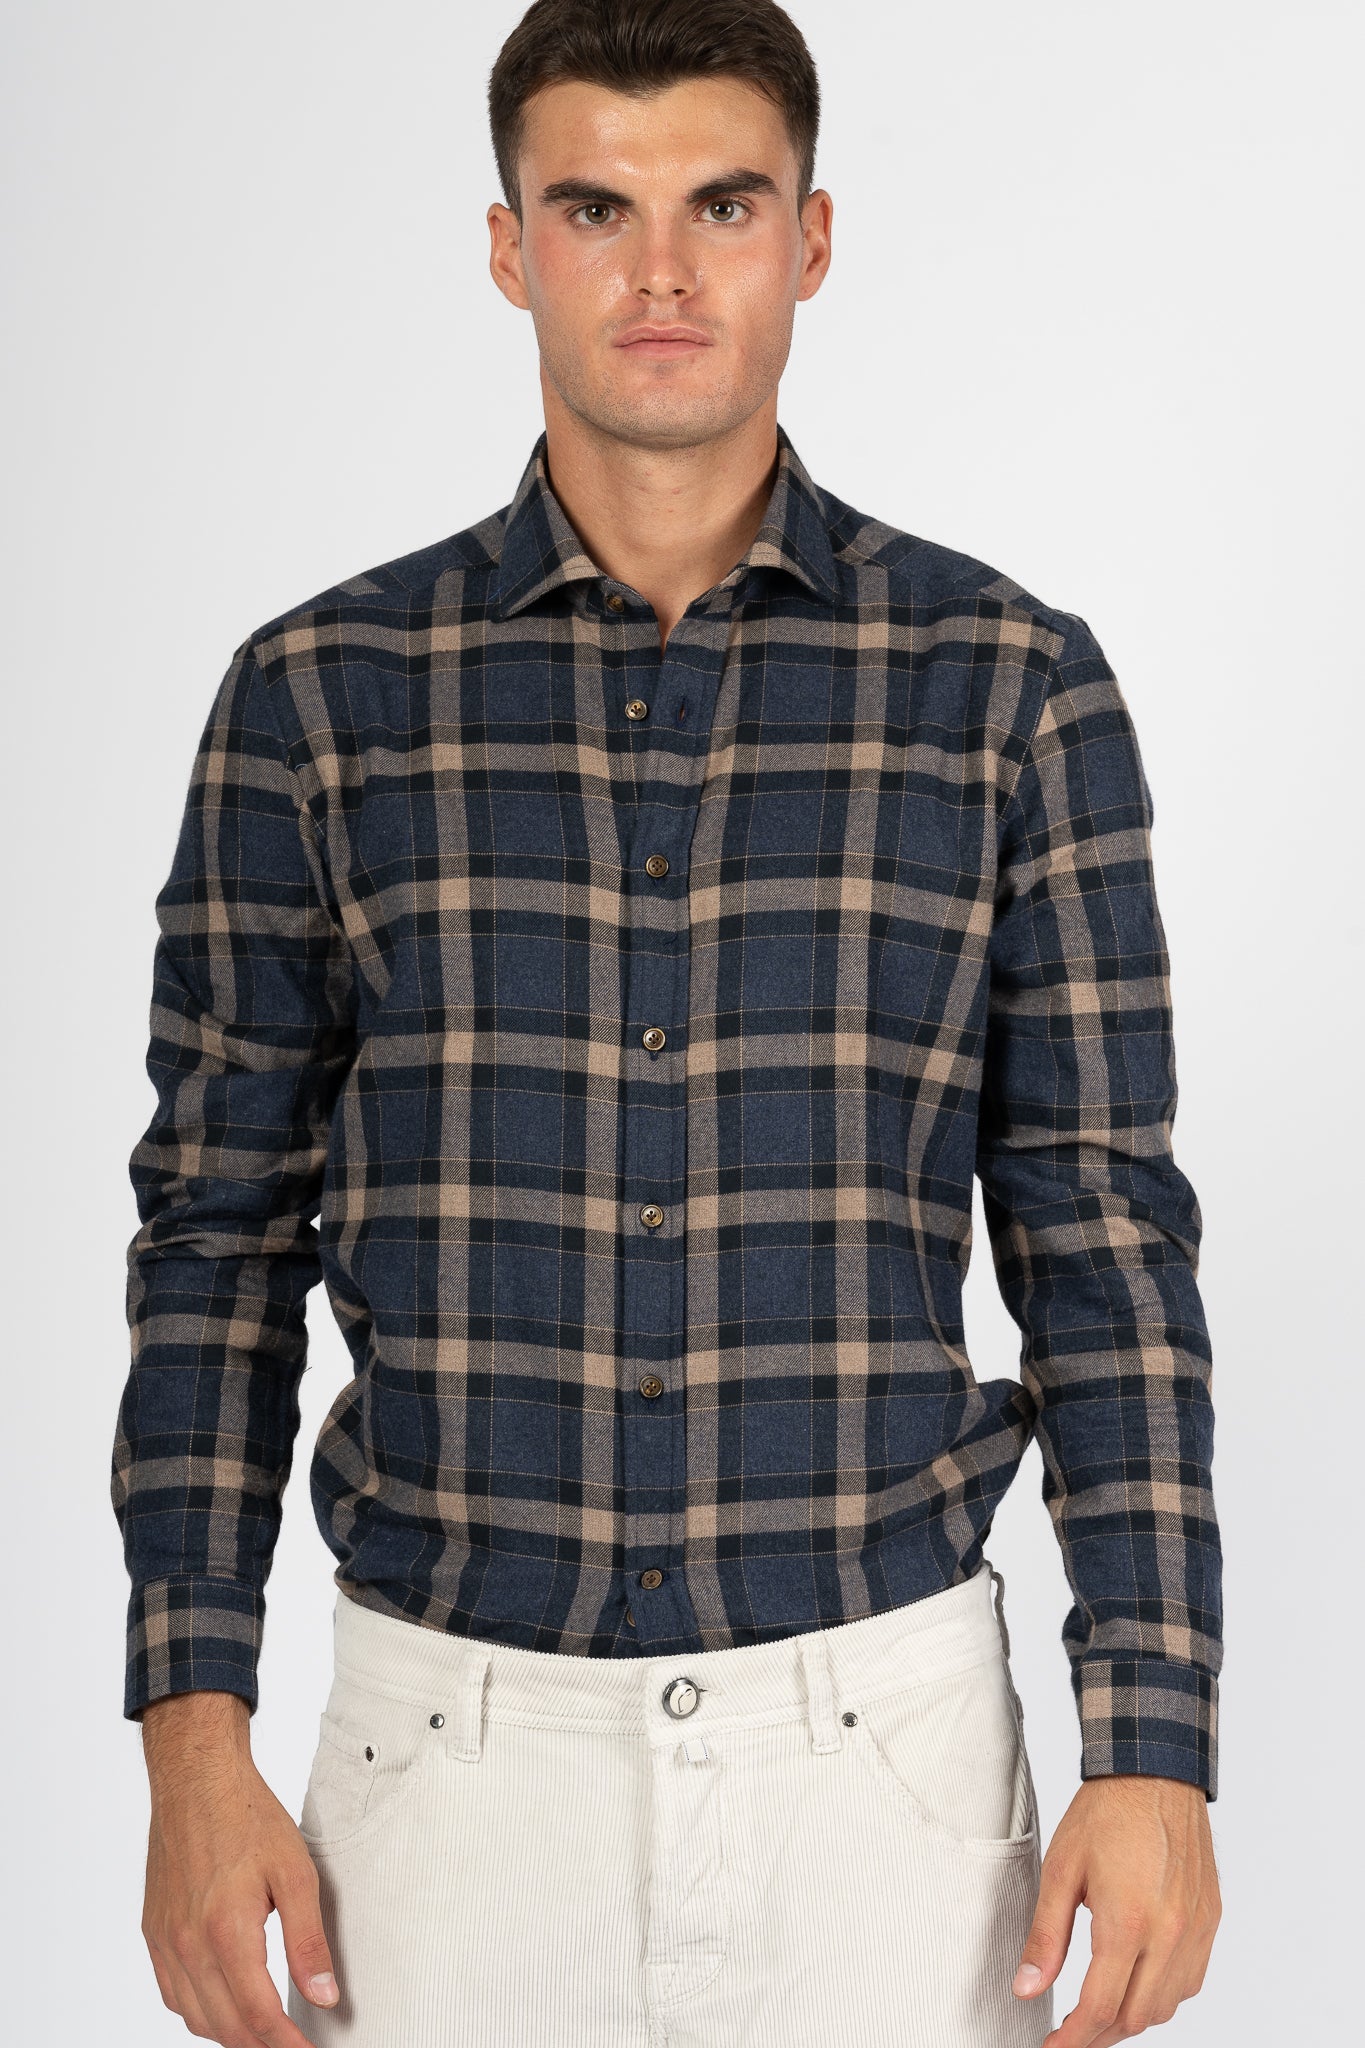 Sonrisa Men's Blue/Beige Checked Flannel Shirt-1